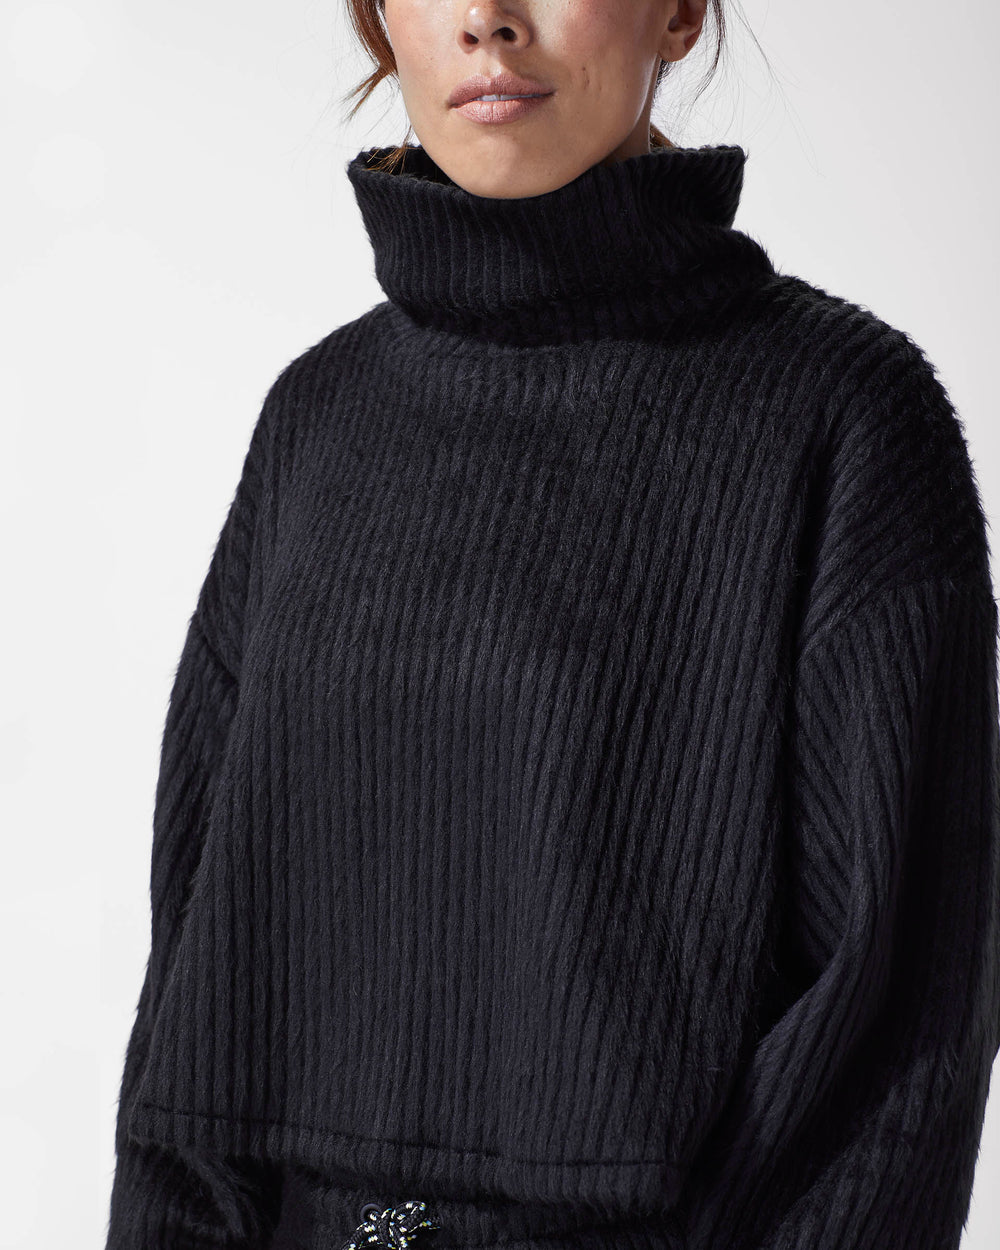 Juniper Ribbed Sweater - Black